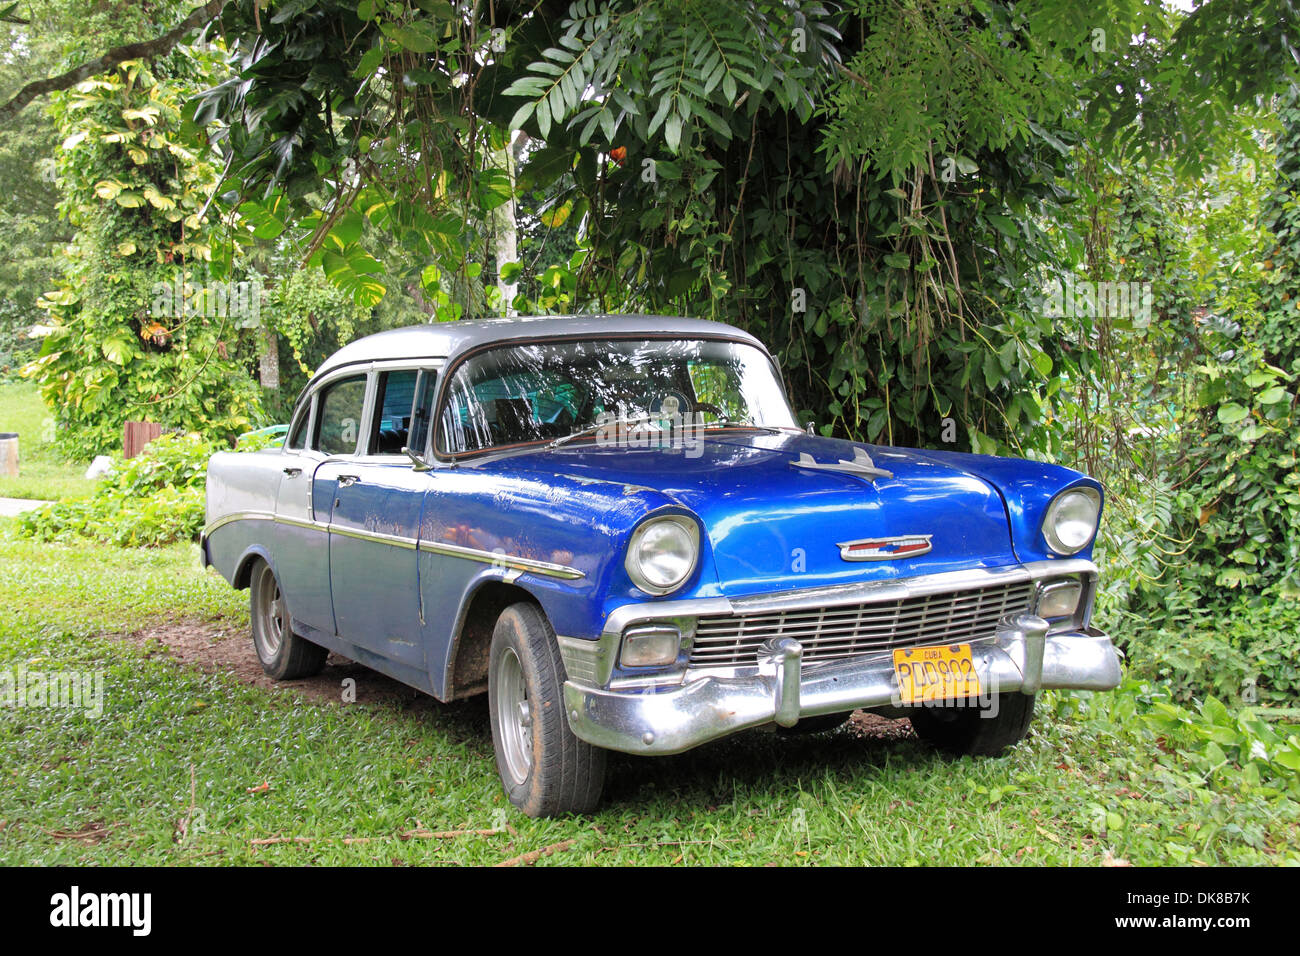 1956 Chevrolet 210, Cueva del Indio, Viñales, Pinar del Rio province, Cuba, Caribbean Sea, Central America Stock Photo